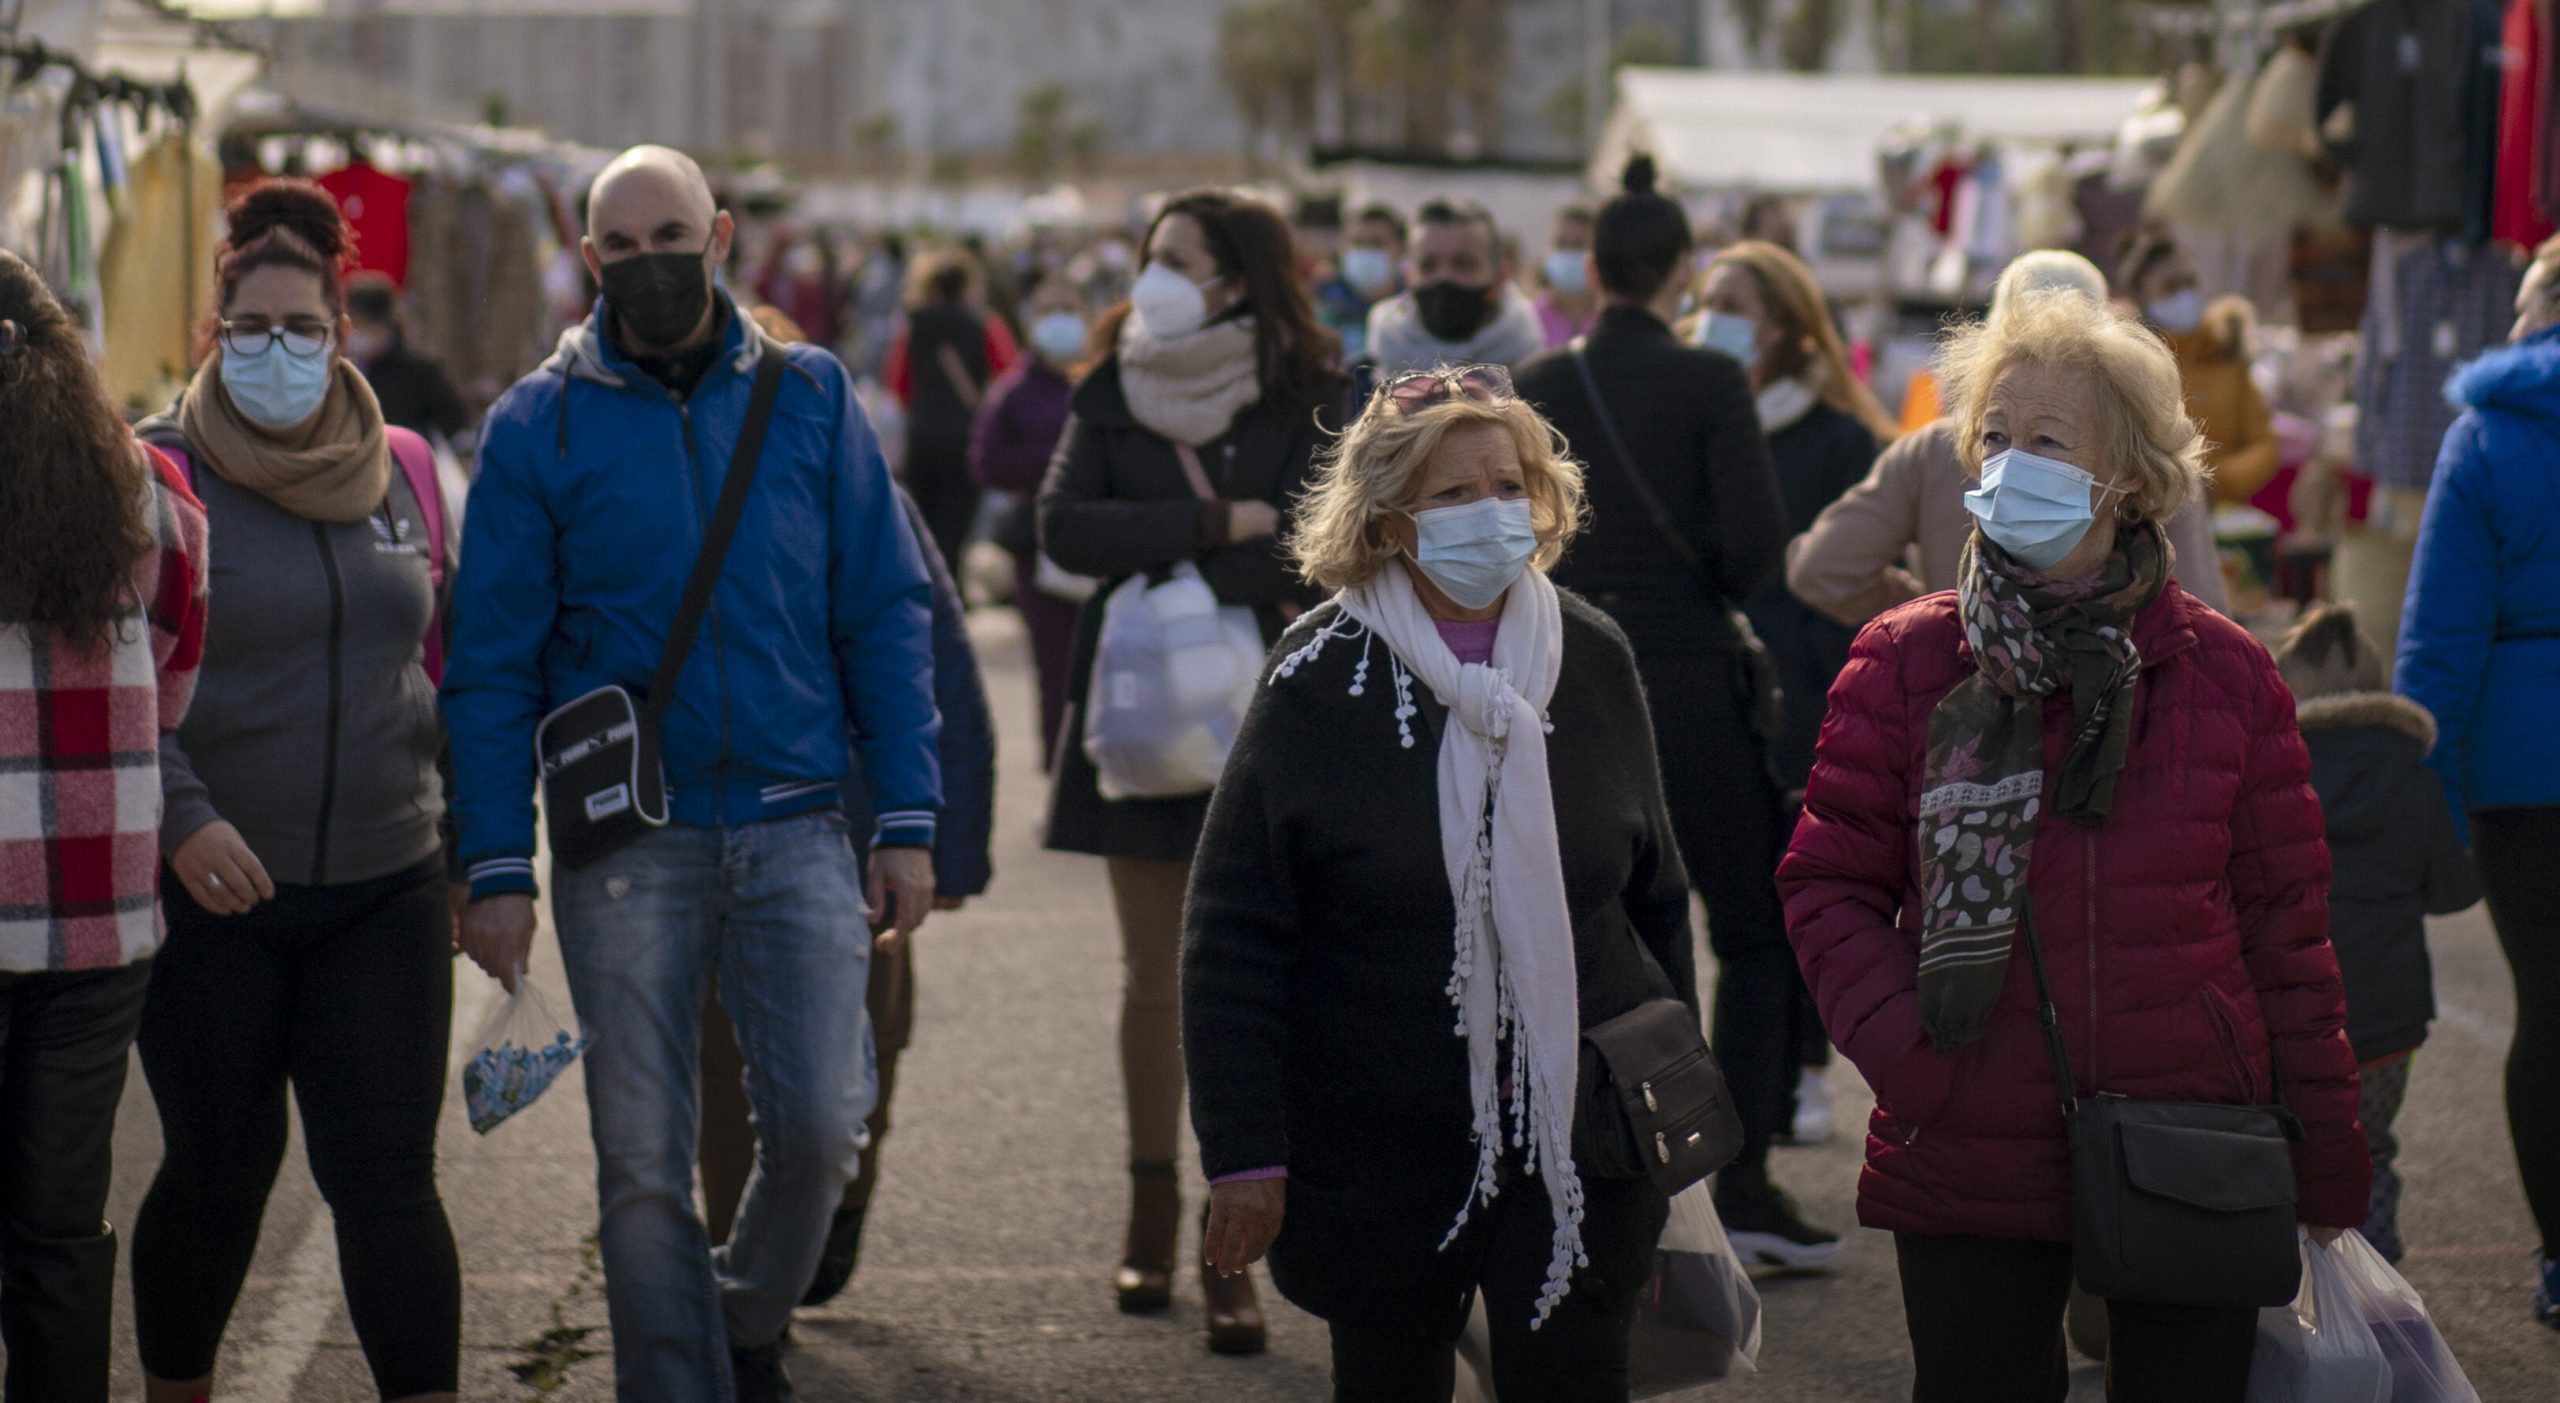 Strategia potrivită împotriva pandemiei| Eliminăm complet virusul, sau învățăm să trăim cu el?